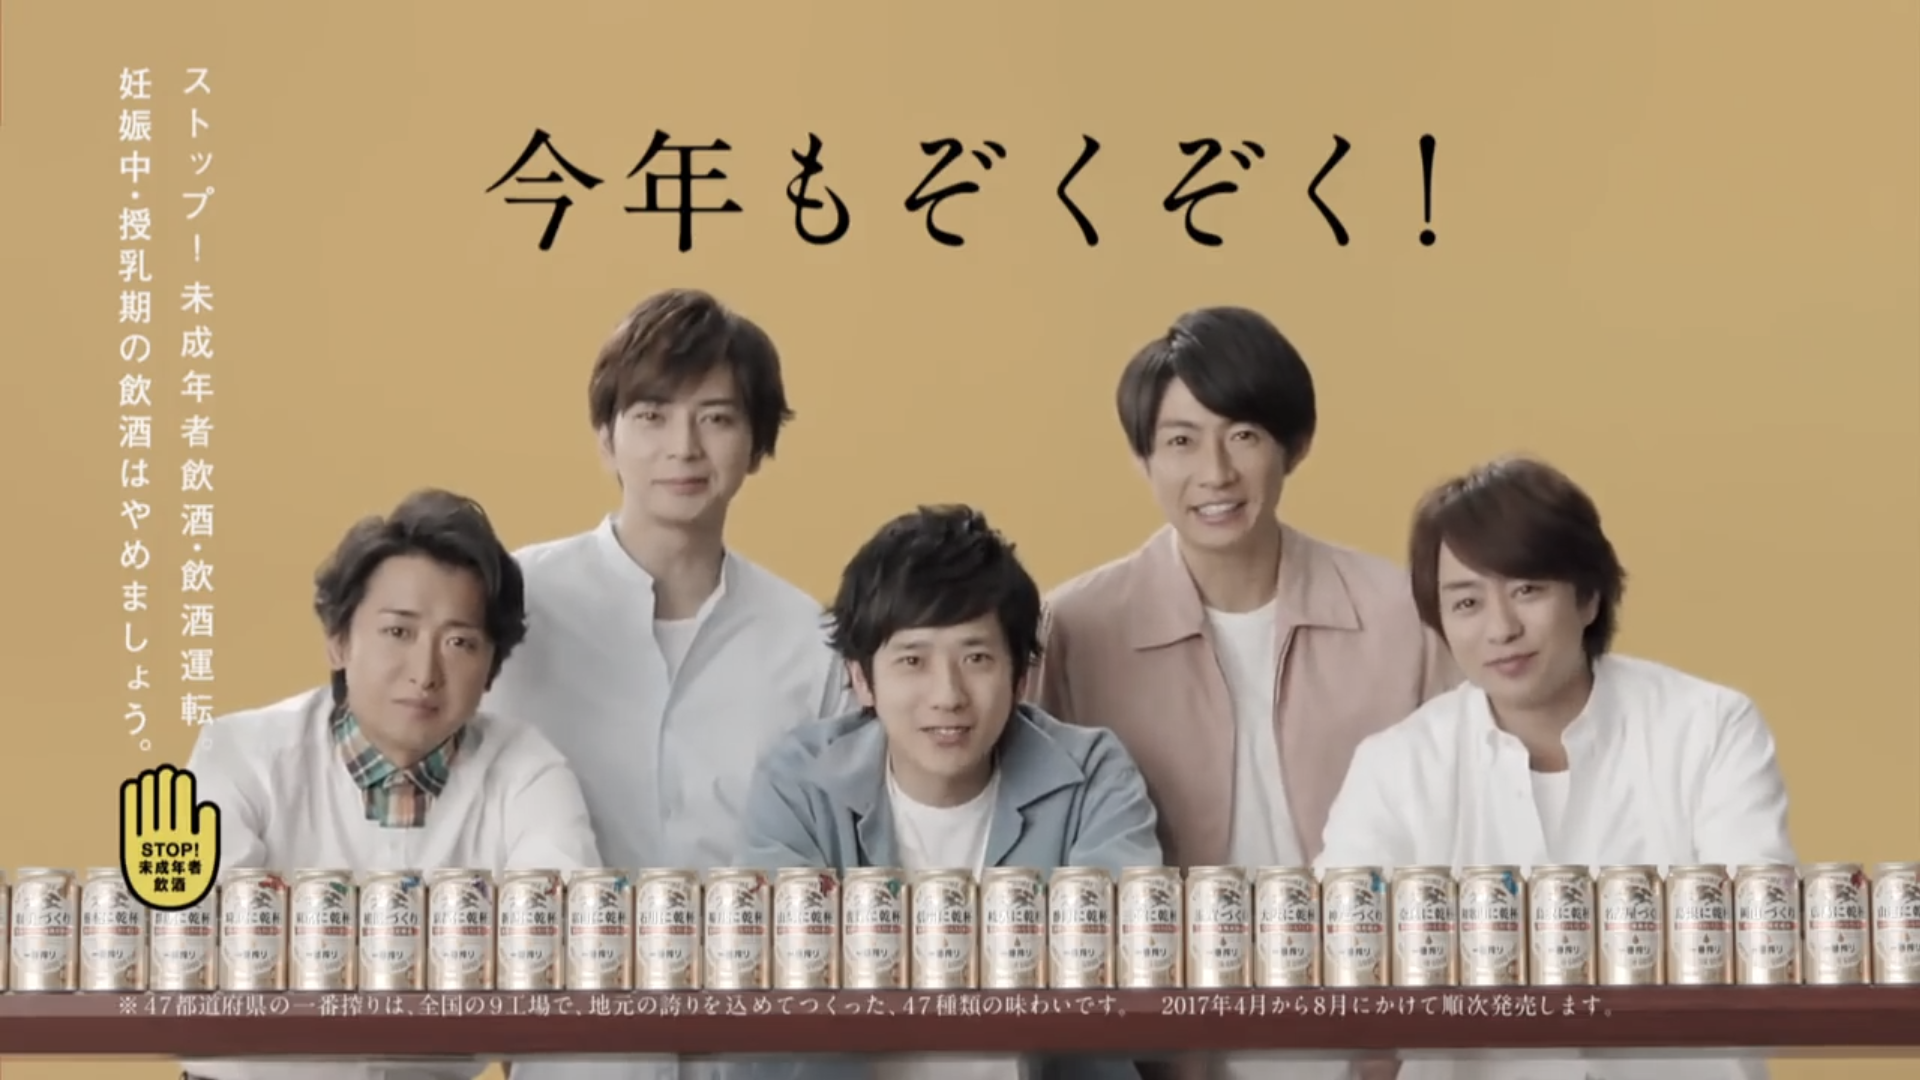 【日本】嵐代言KIRIN各县出品啤酒广告